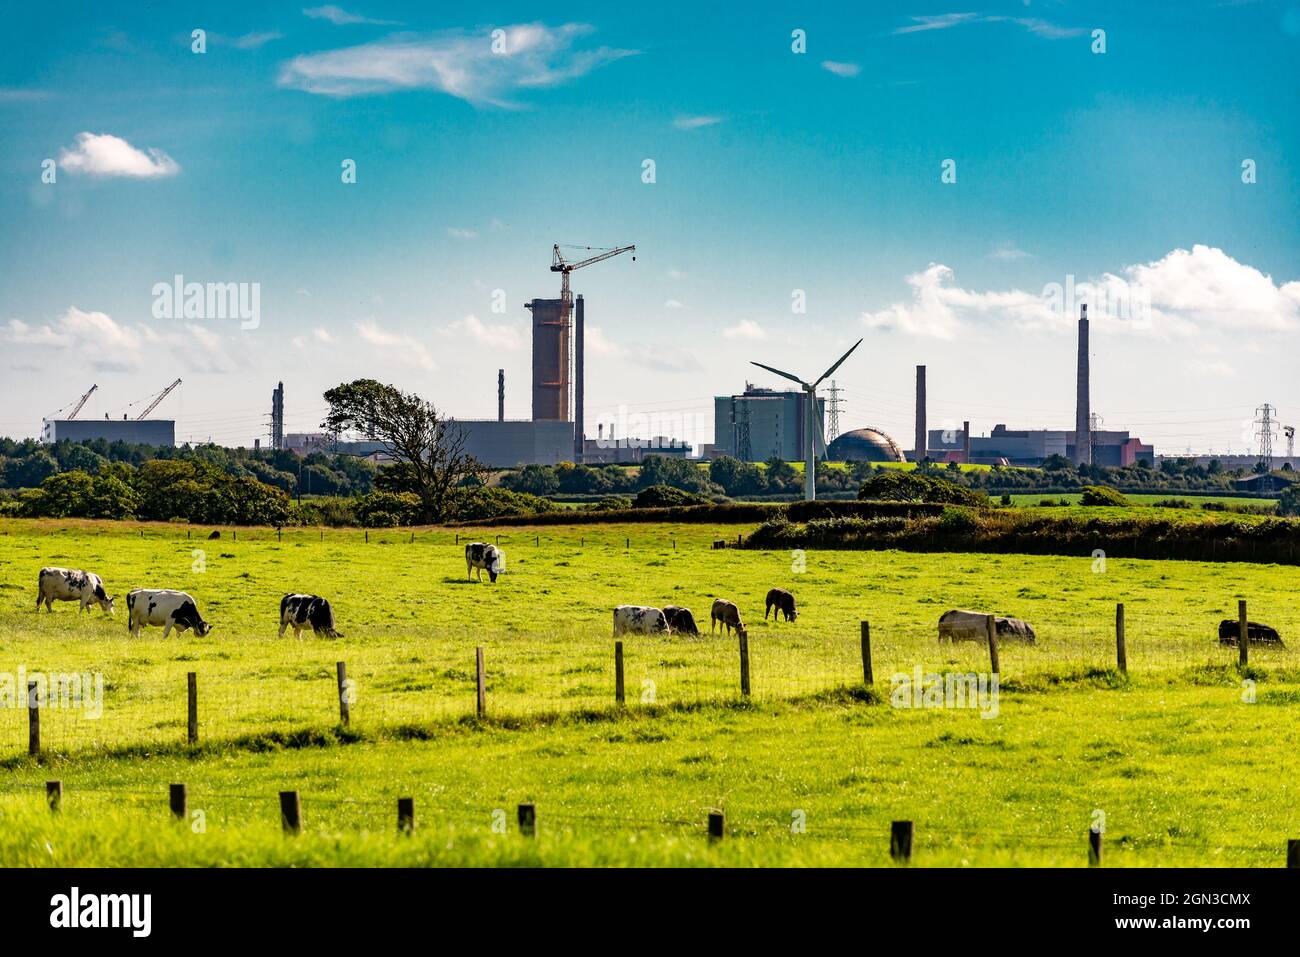 Site de retraitement du combustible nucléaire et de déclassement nucléaire de Sellafield, près du village de Seascale, sur la côte de la mer d'Irlande, à Cumbria, au Royaume-Uni Banque D'Images